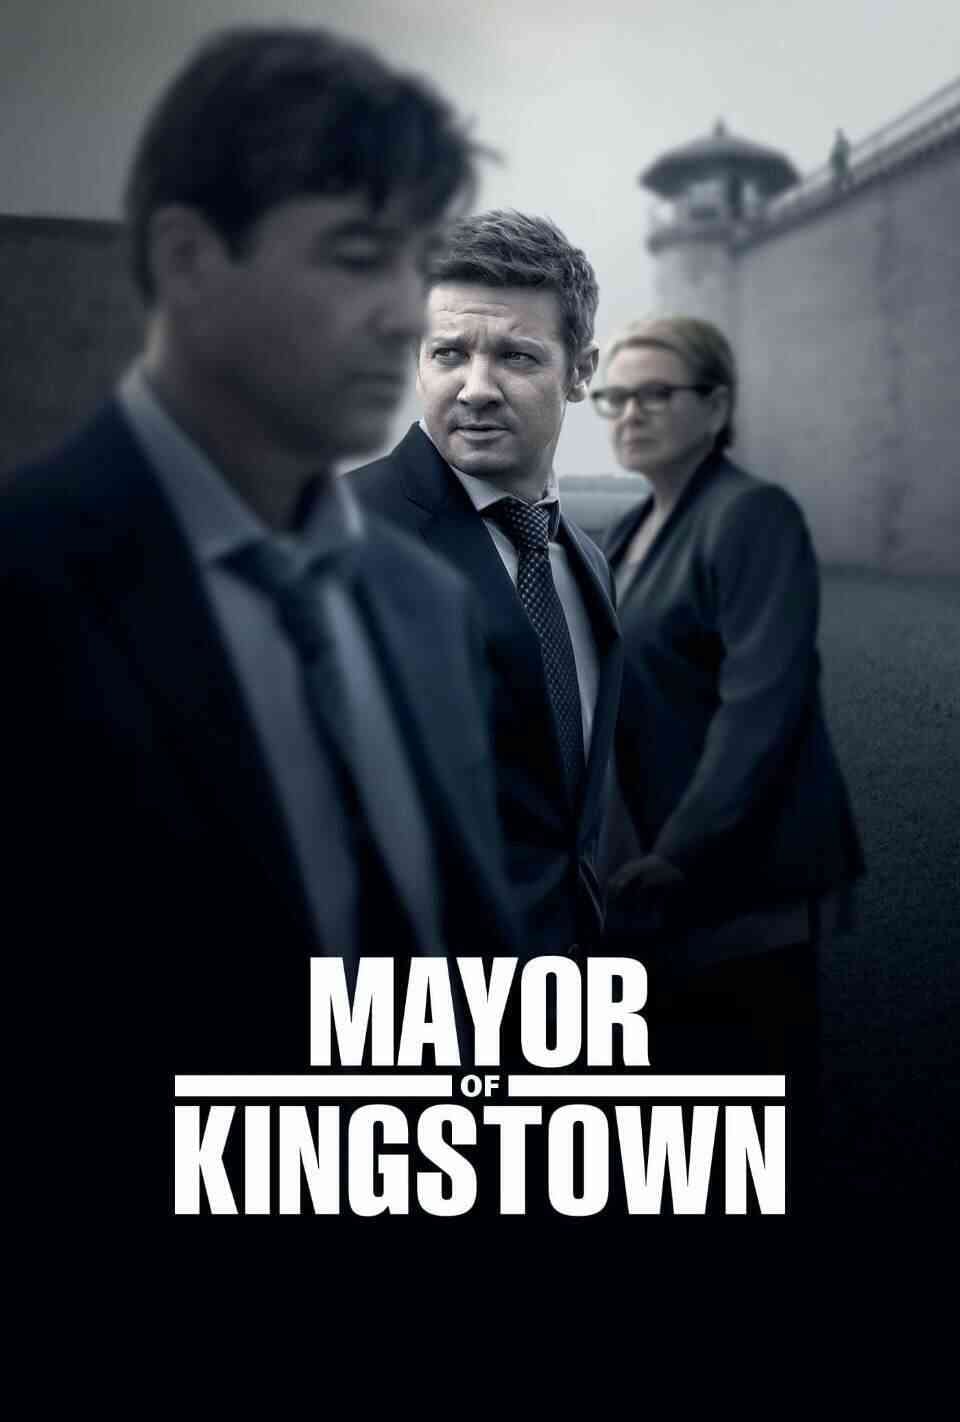 Read Mayor of Kingstown screenplay.